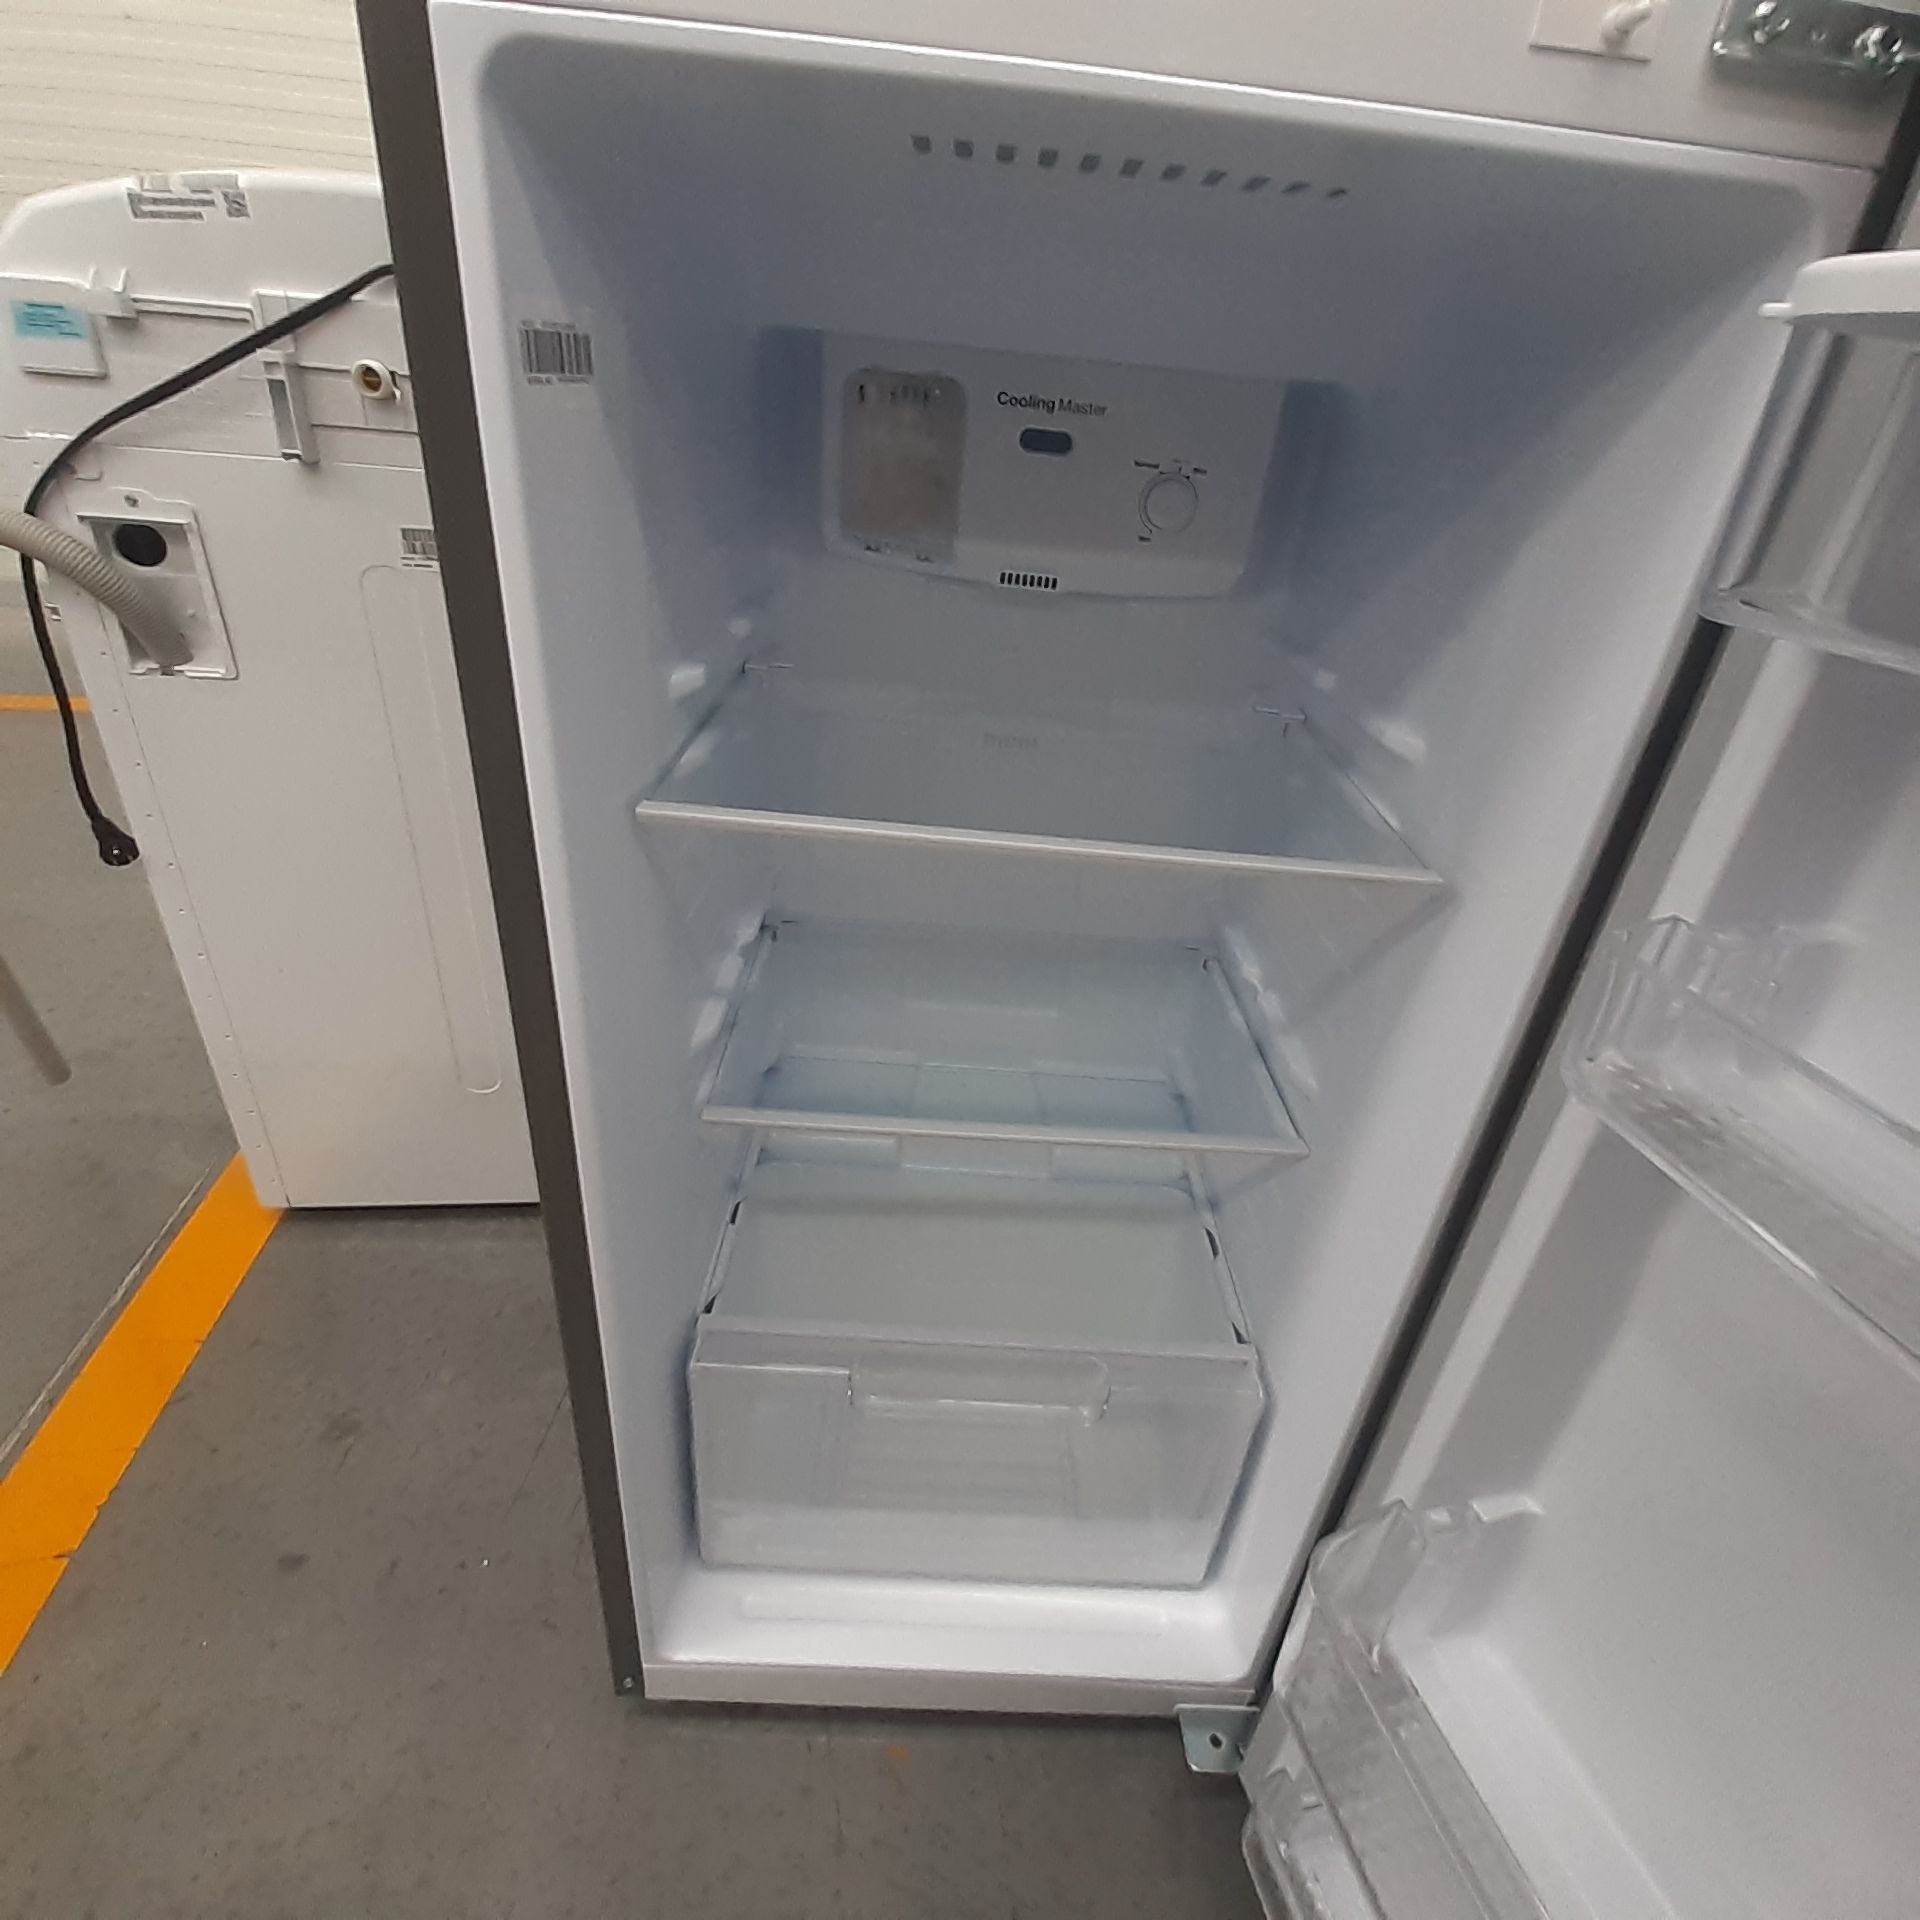 Lote De 2 Refrigeradores: 1 Refrigerador Marca Mabe, 1 Refrigerador Marca Winia, Distintos Modelos - Image 16 of 23